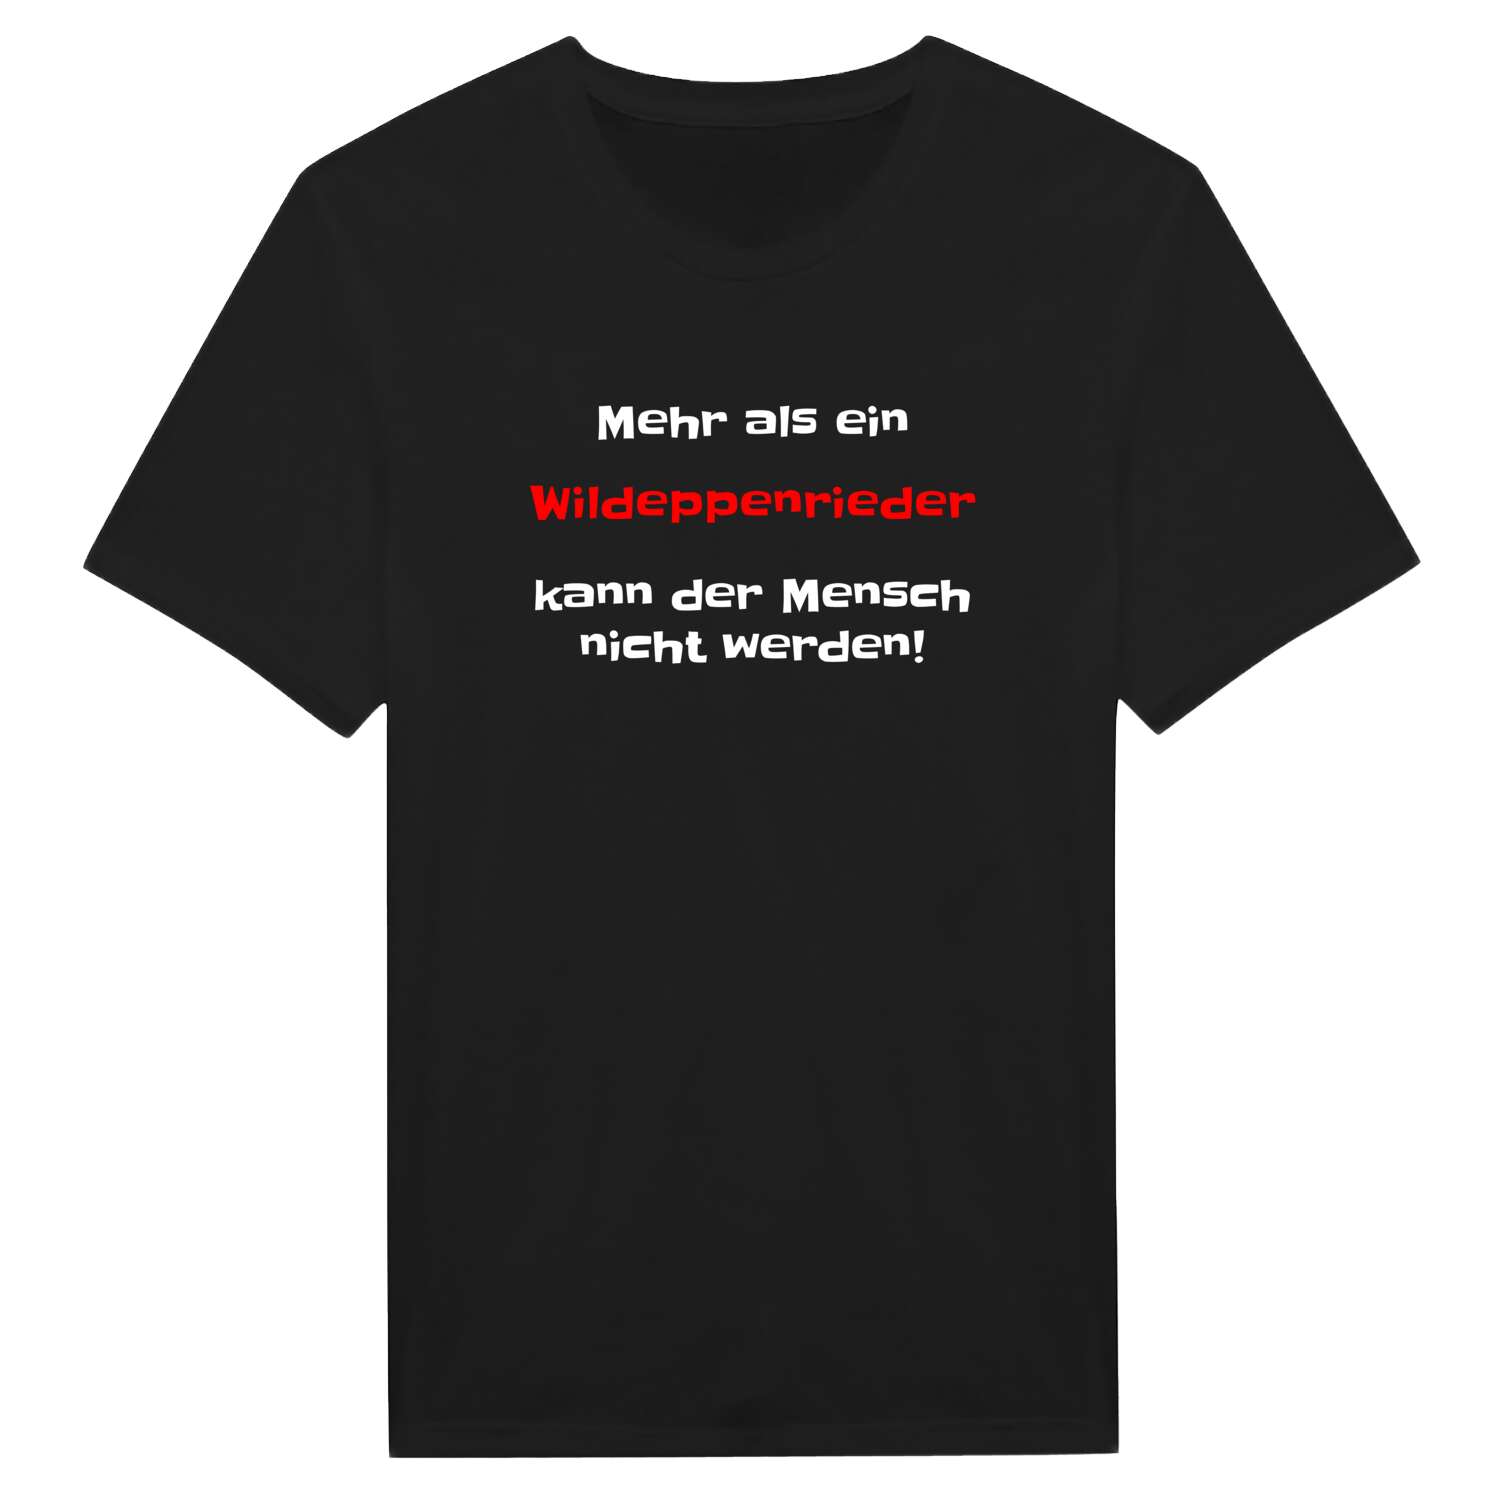 Wildeppenried T-Shirt »Mehr als ein«